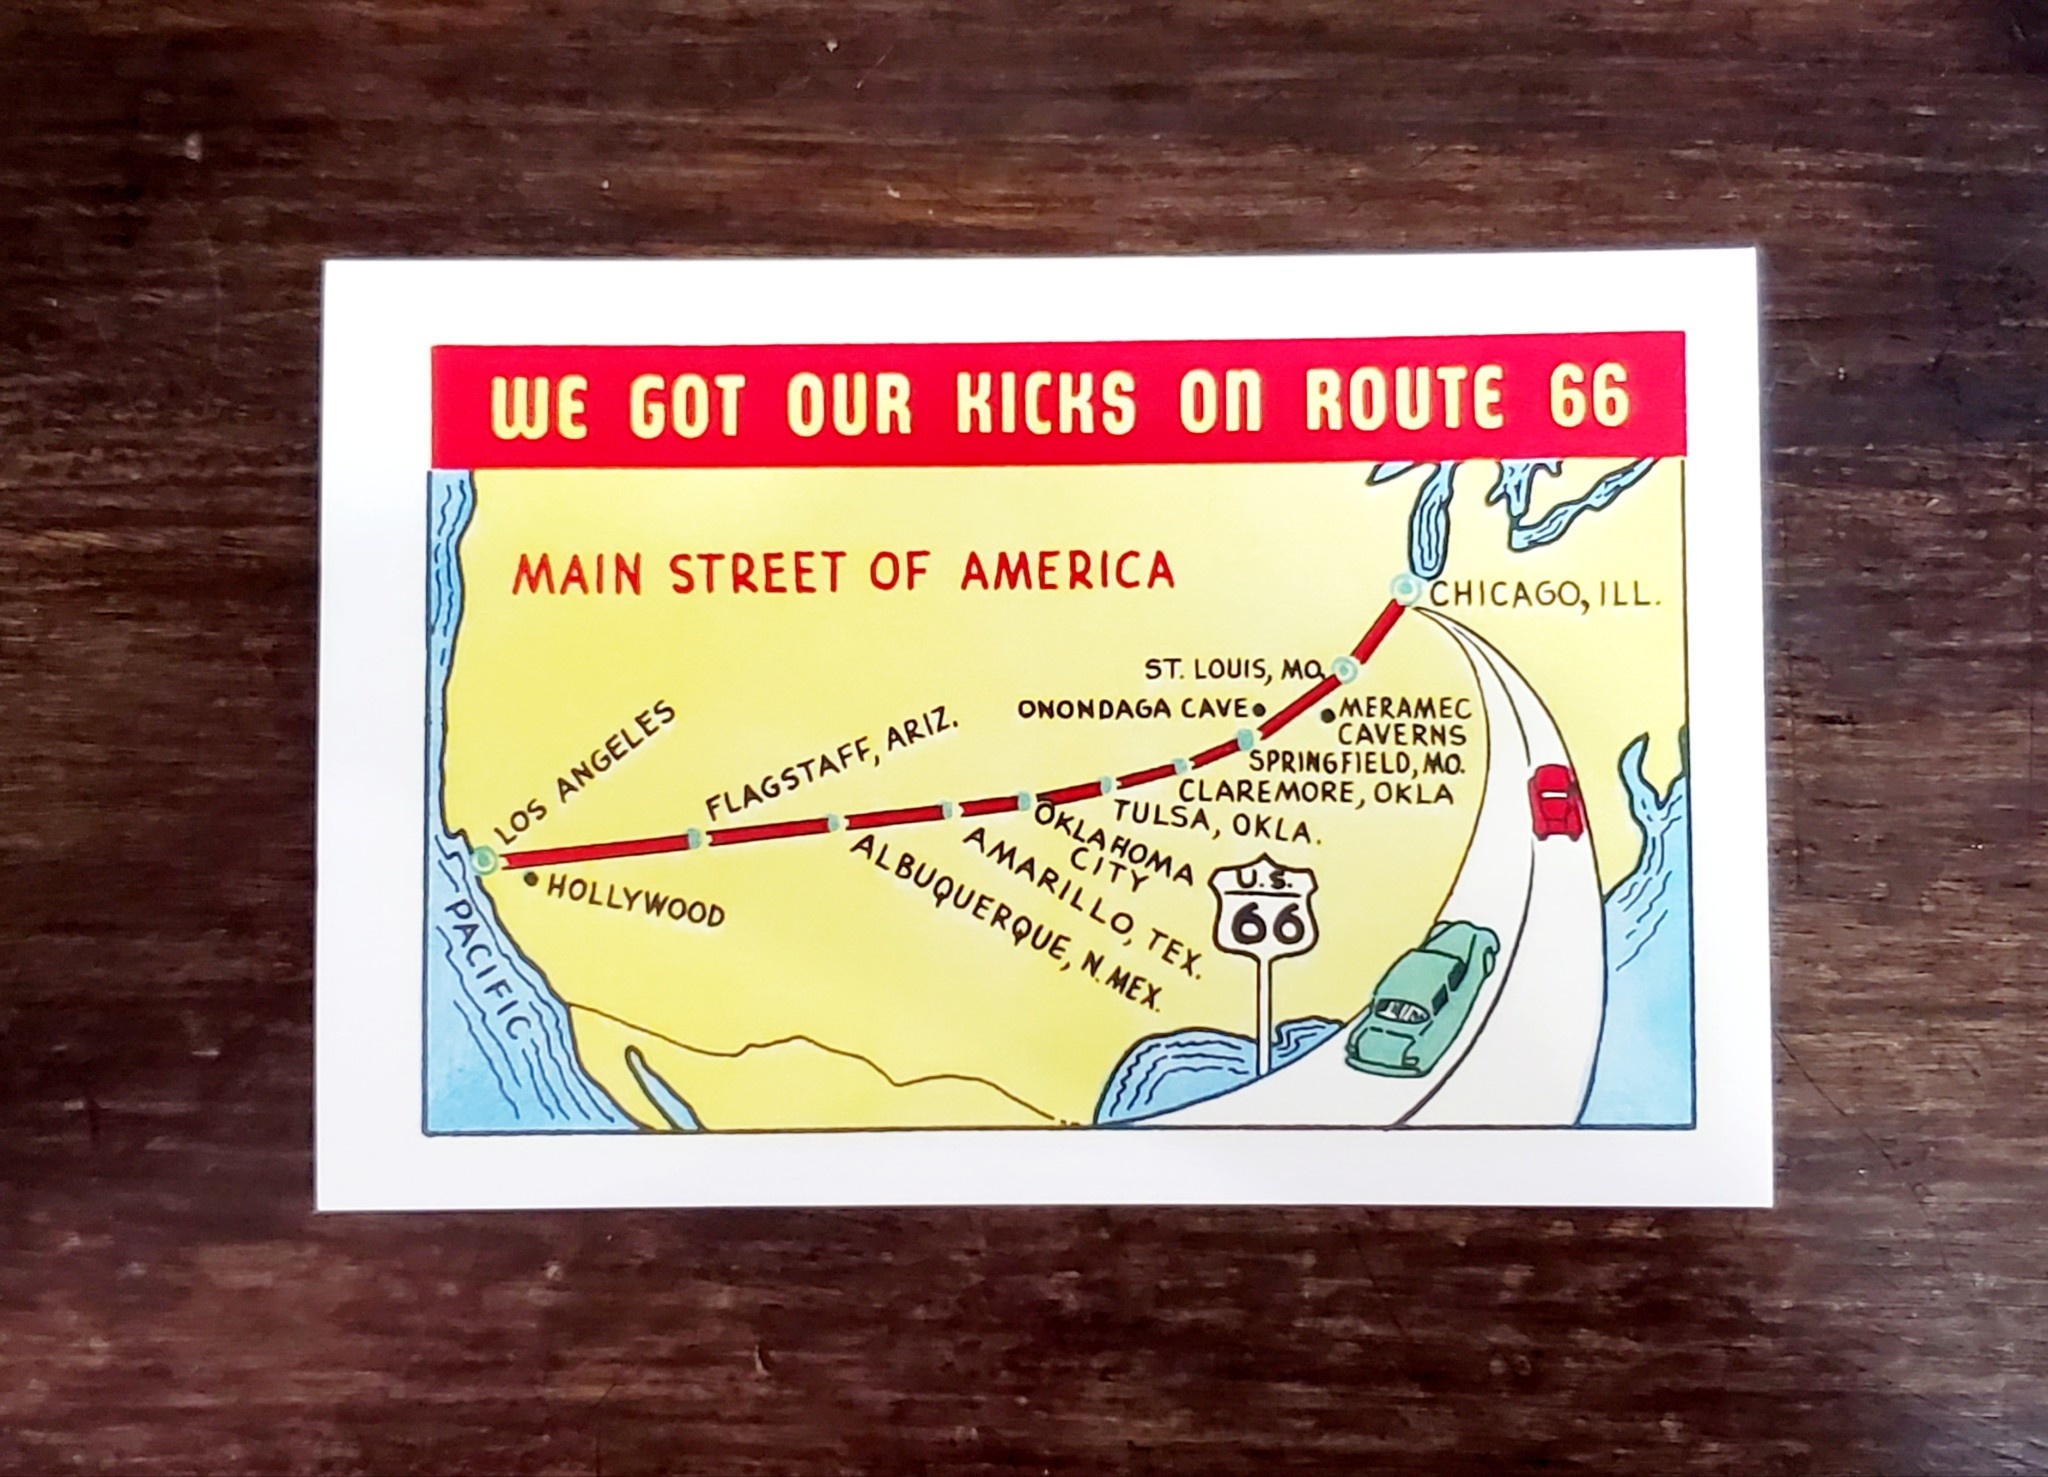 Found Image Press Kicks on Route 66 Postcard